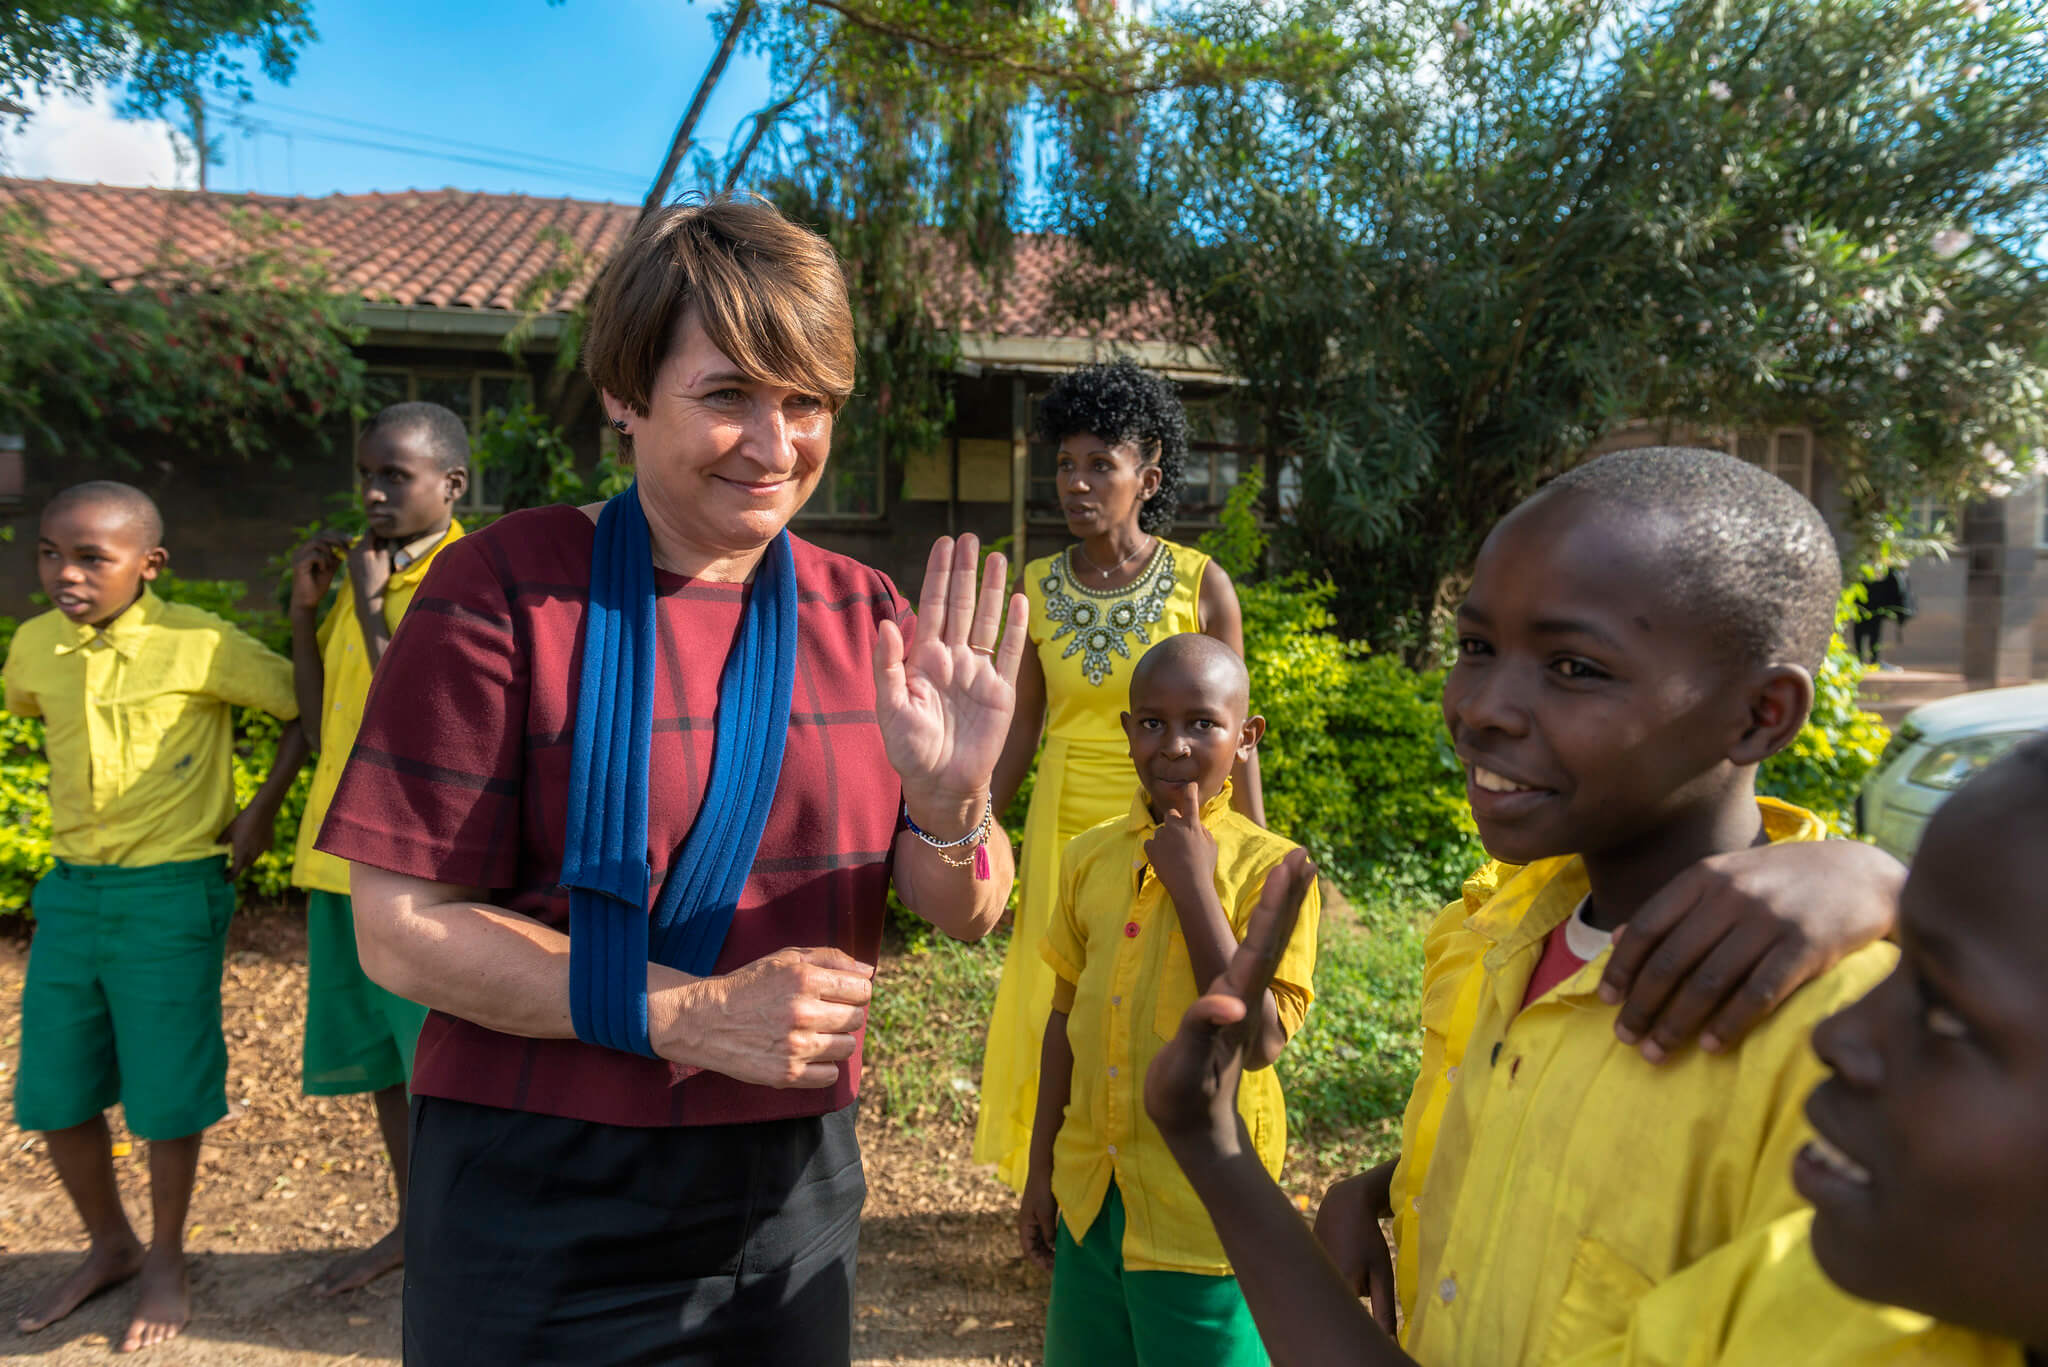 Kleinrensink-In 2017 bracht Lilianne Ploumen als Minister voor Buitenlandse Handel en Ontwikkelingssamenwerking een bezoek aan Kenia. Ministerie van Buitenlandse Zaken